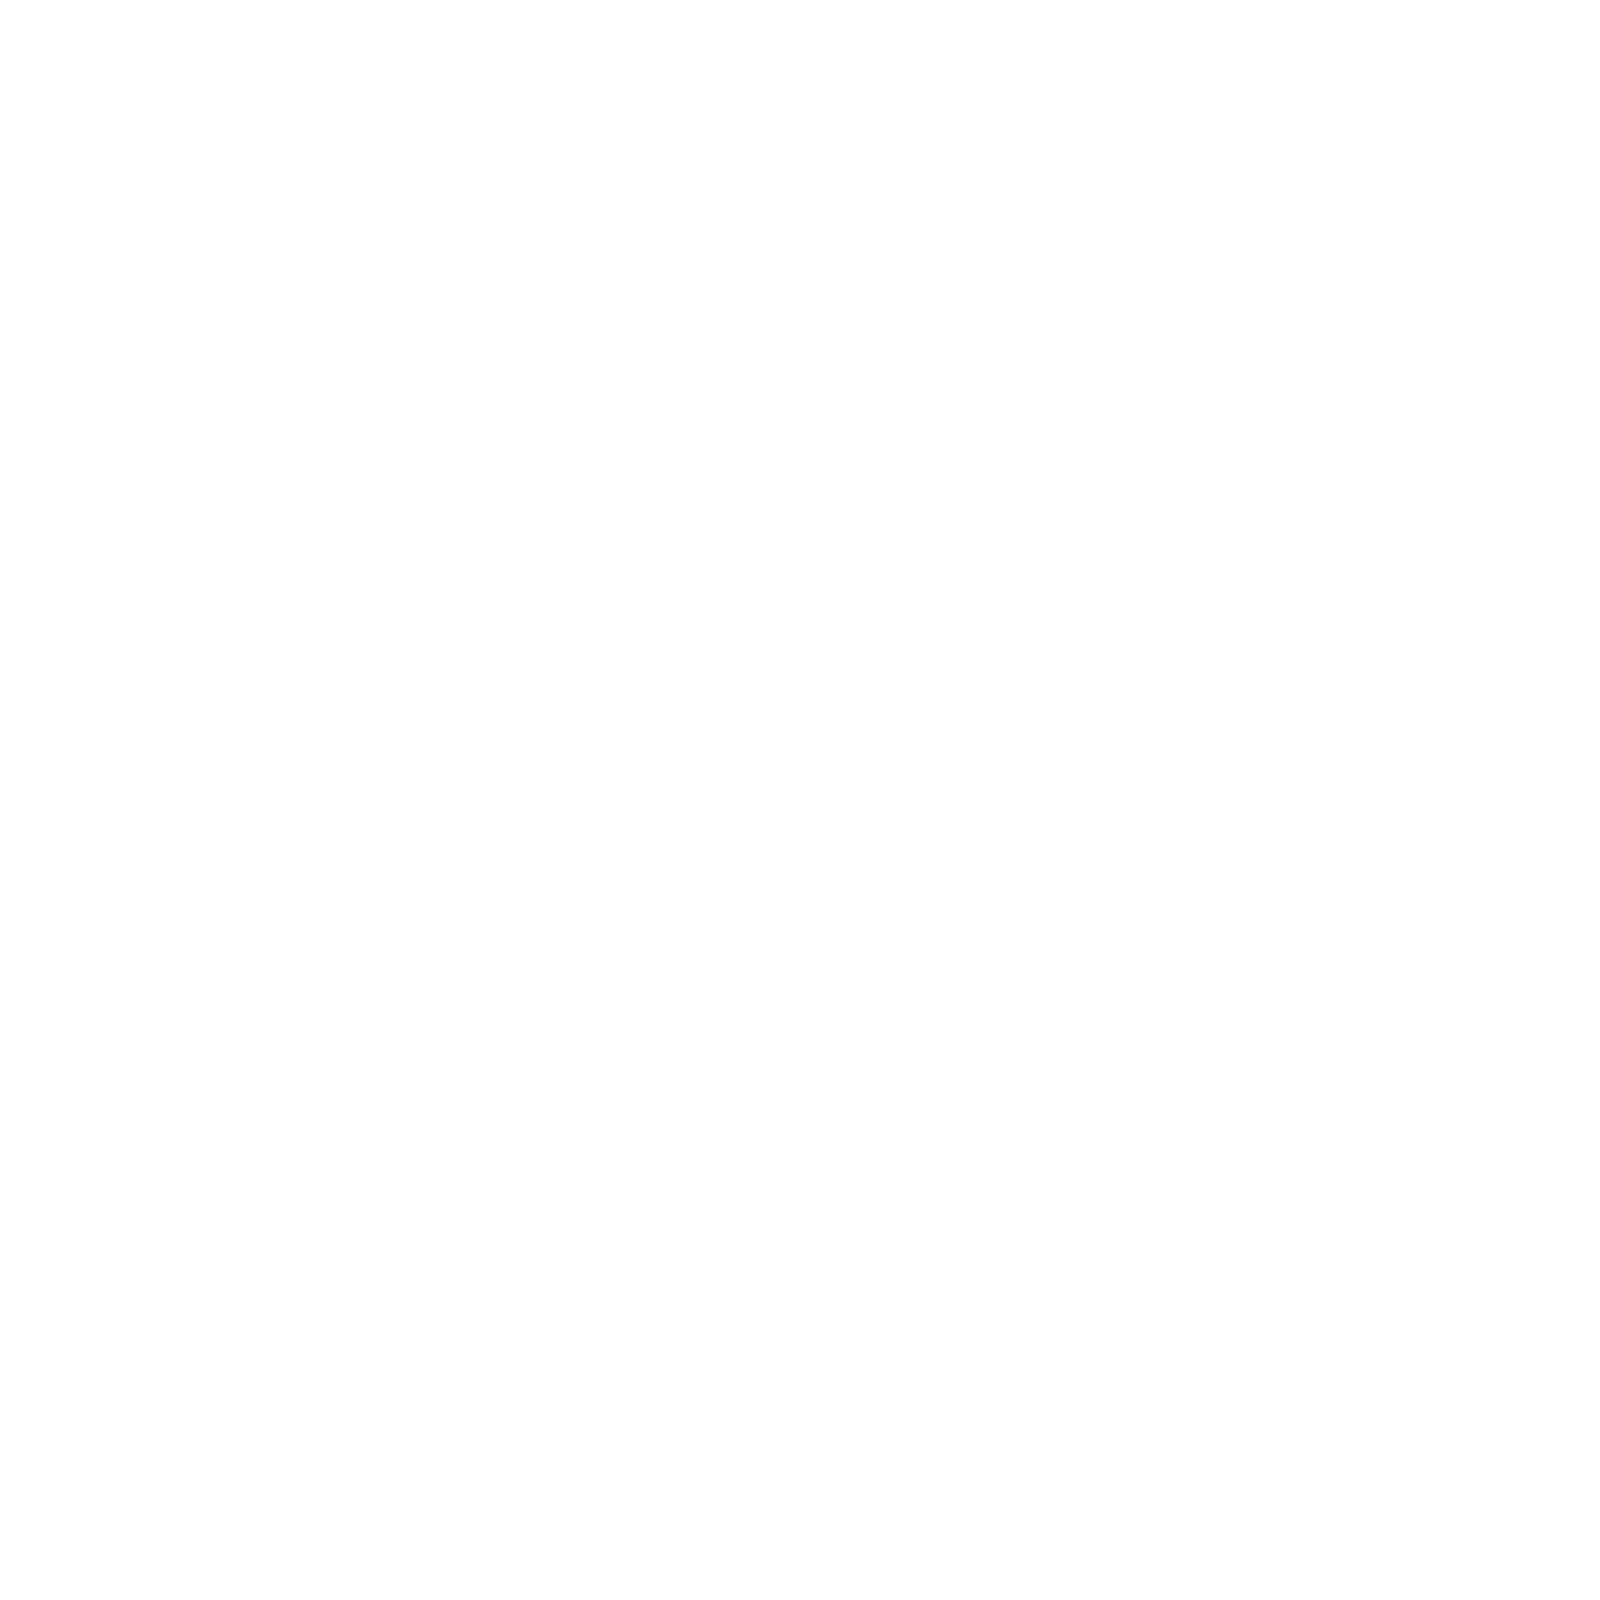 Ape Island